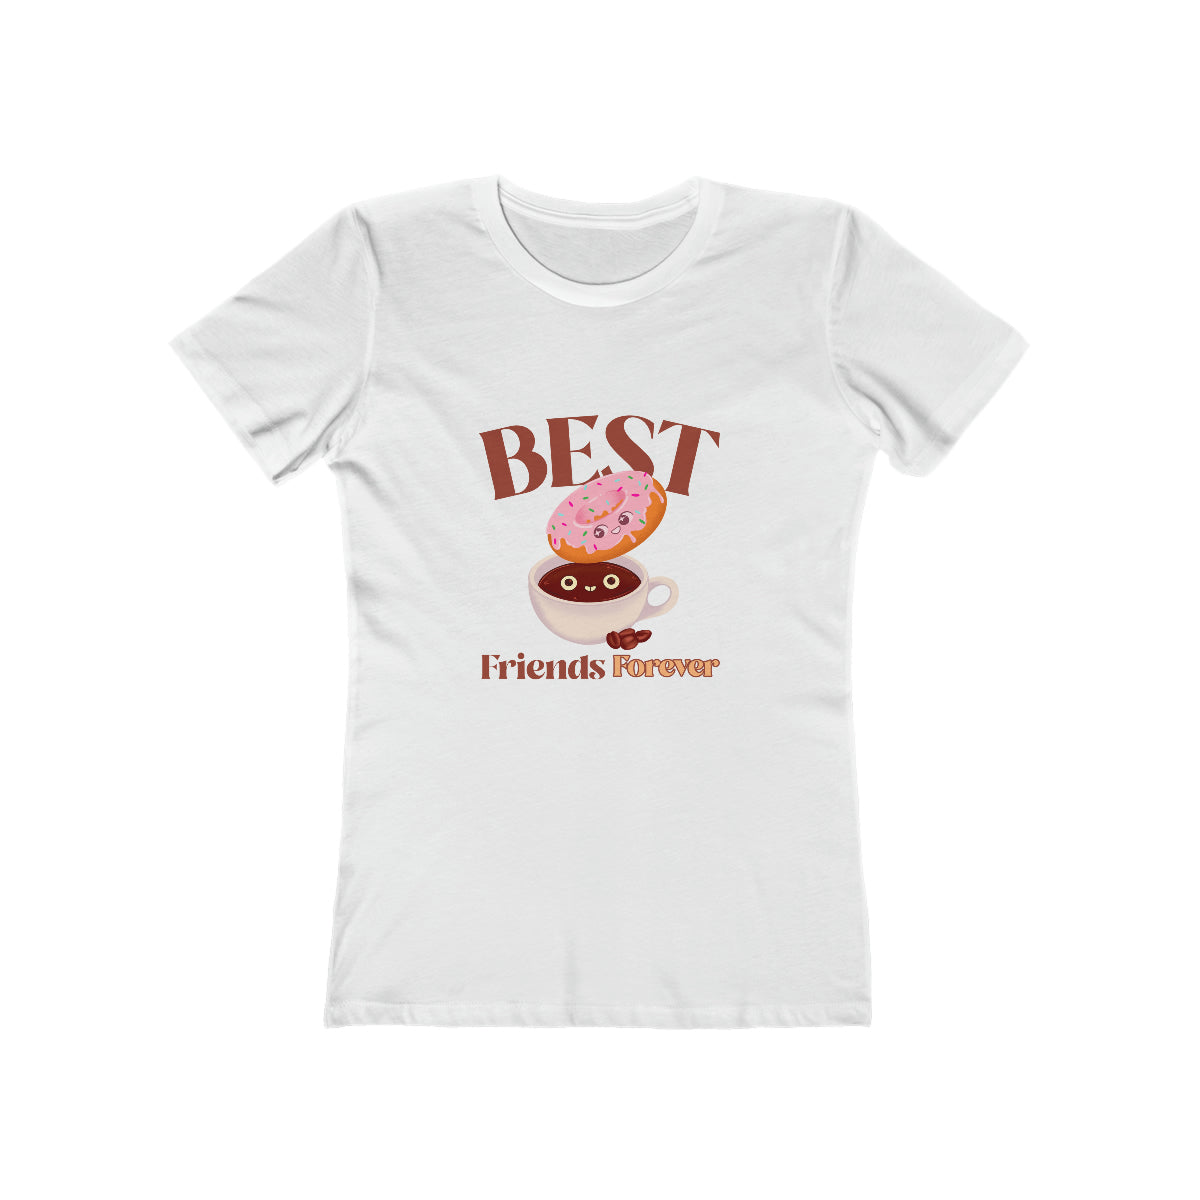 Best Friends Forever - Women's T-shirt